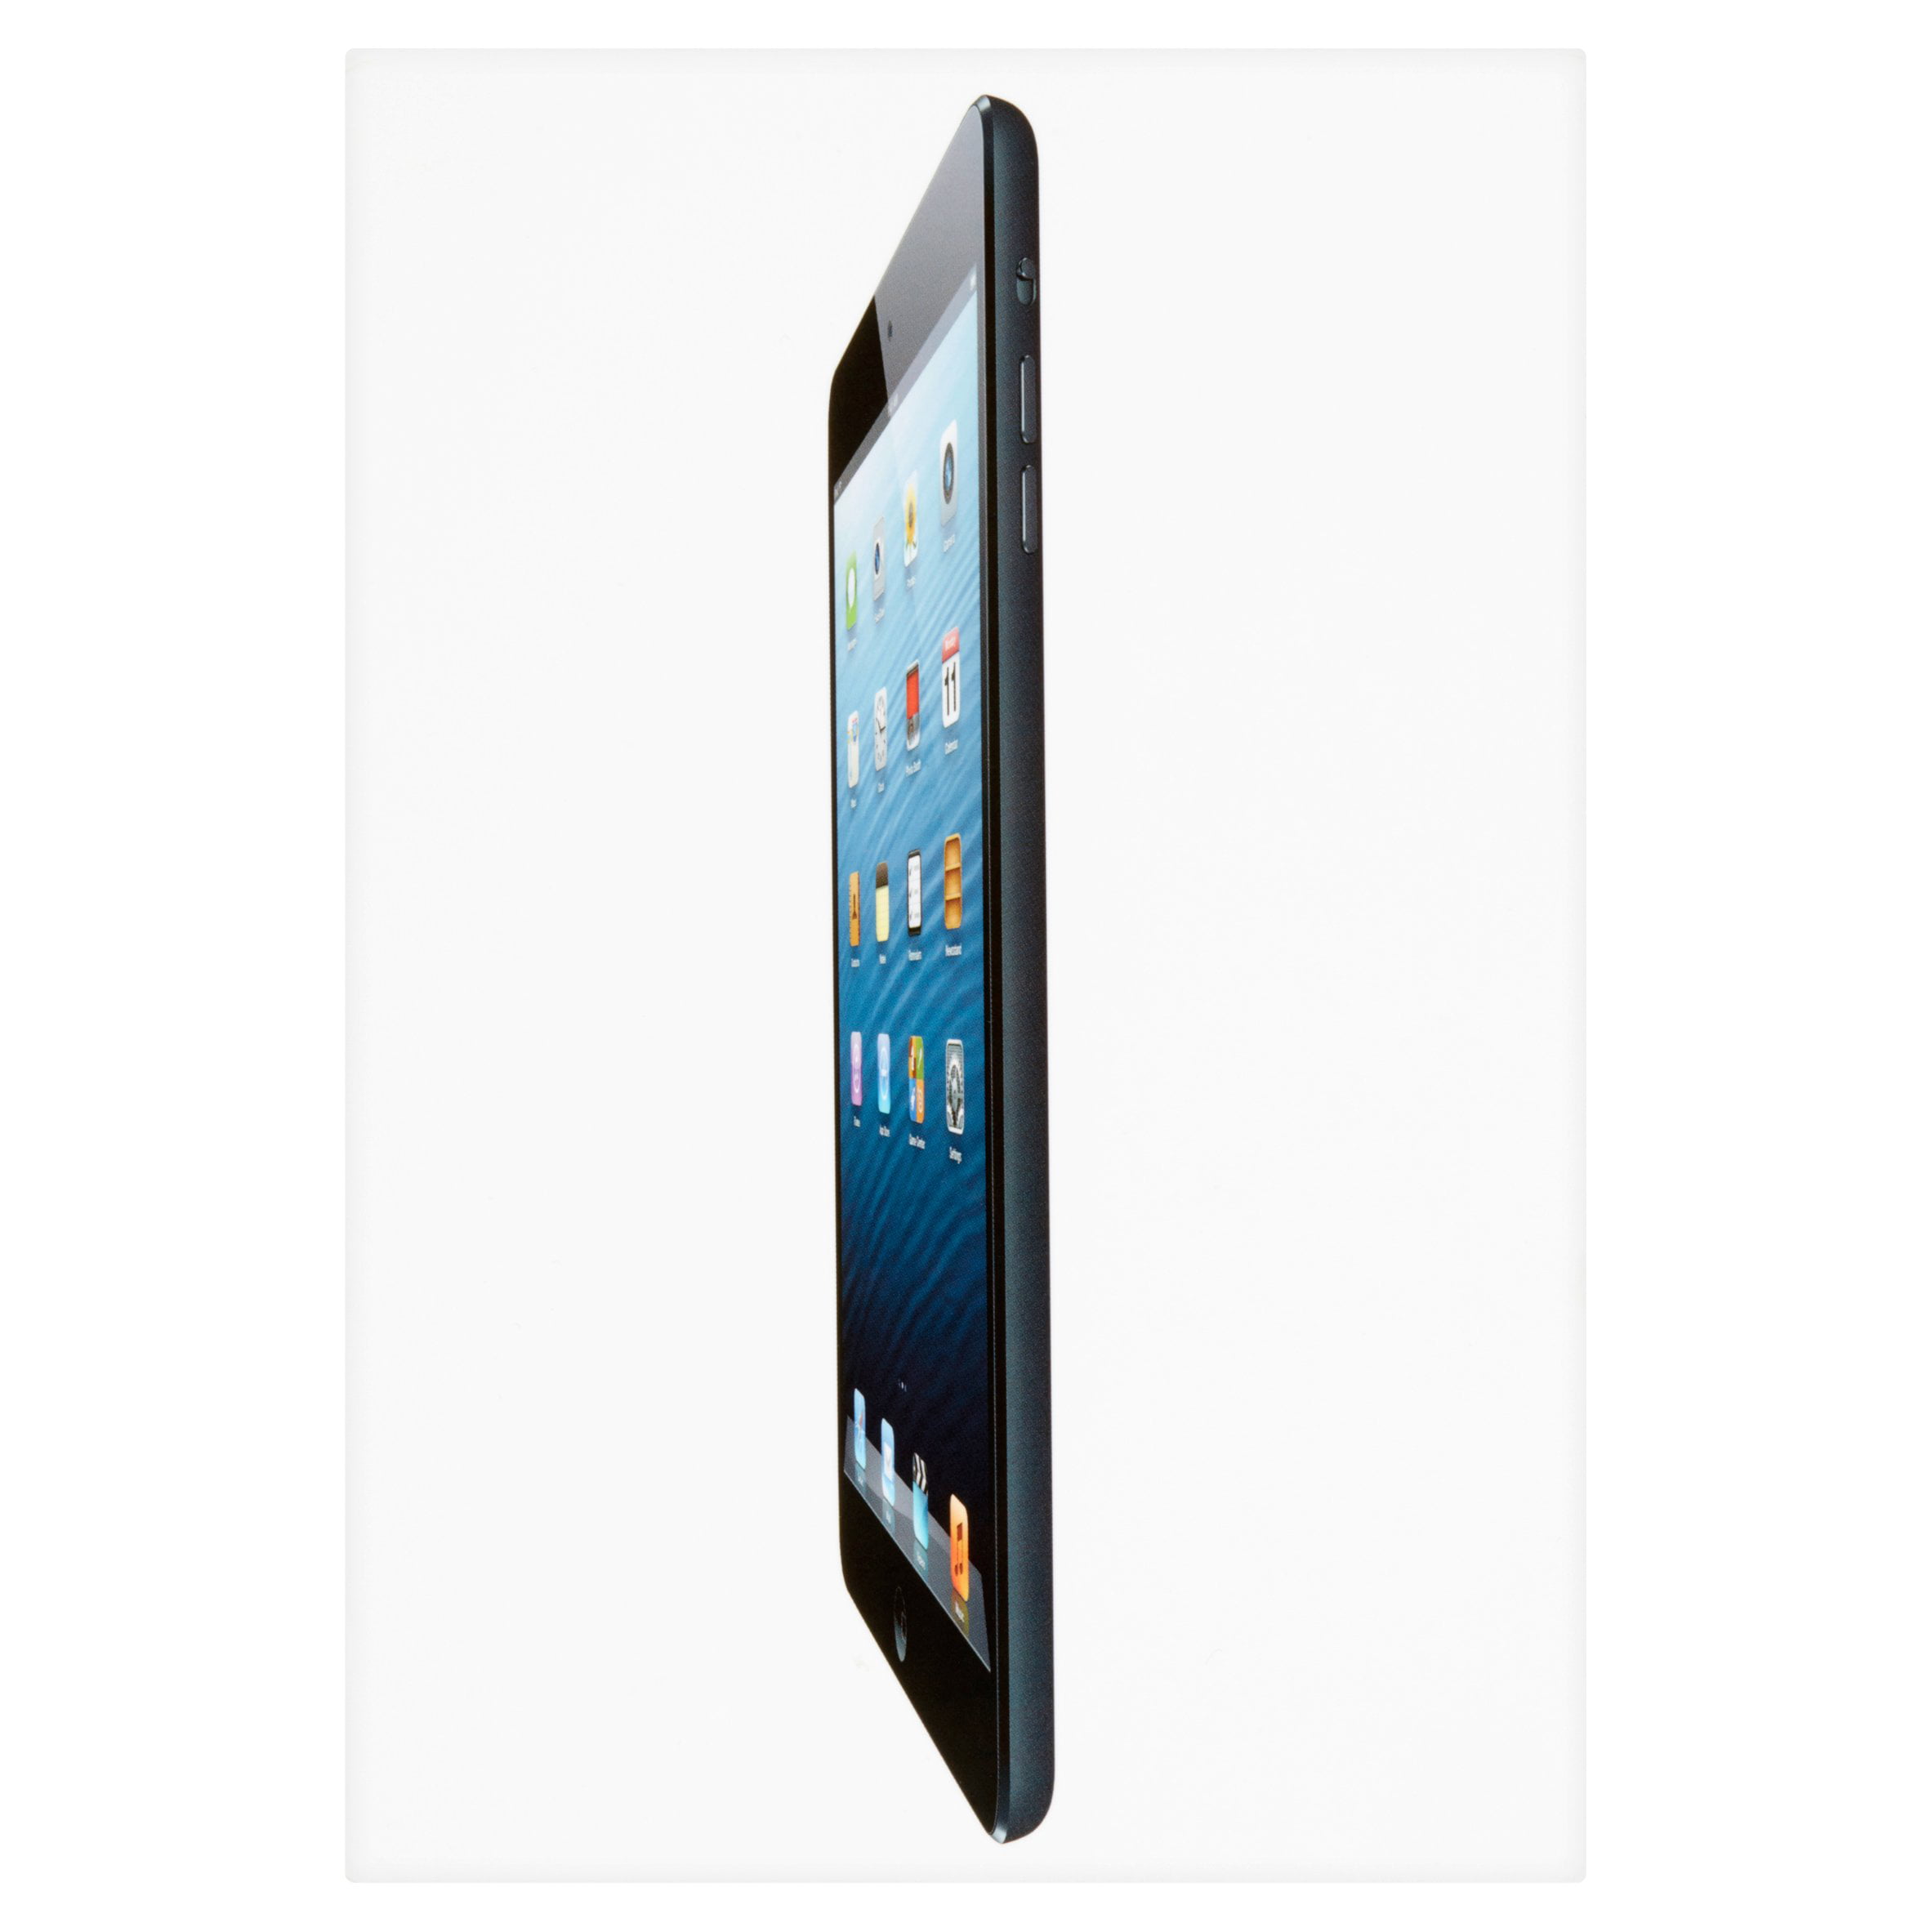 Apple 32GB Black iPad Mini Cellular - Walmart.com